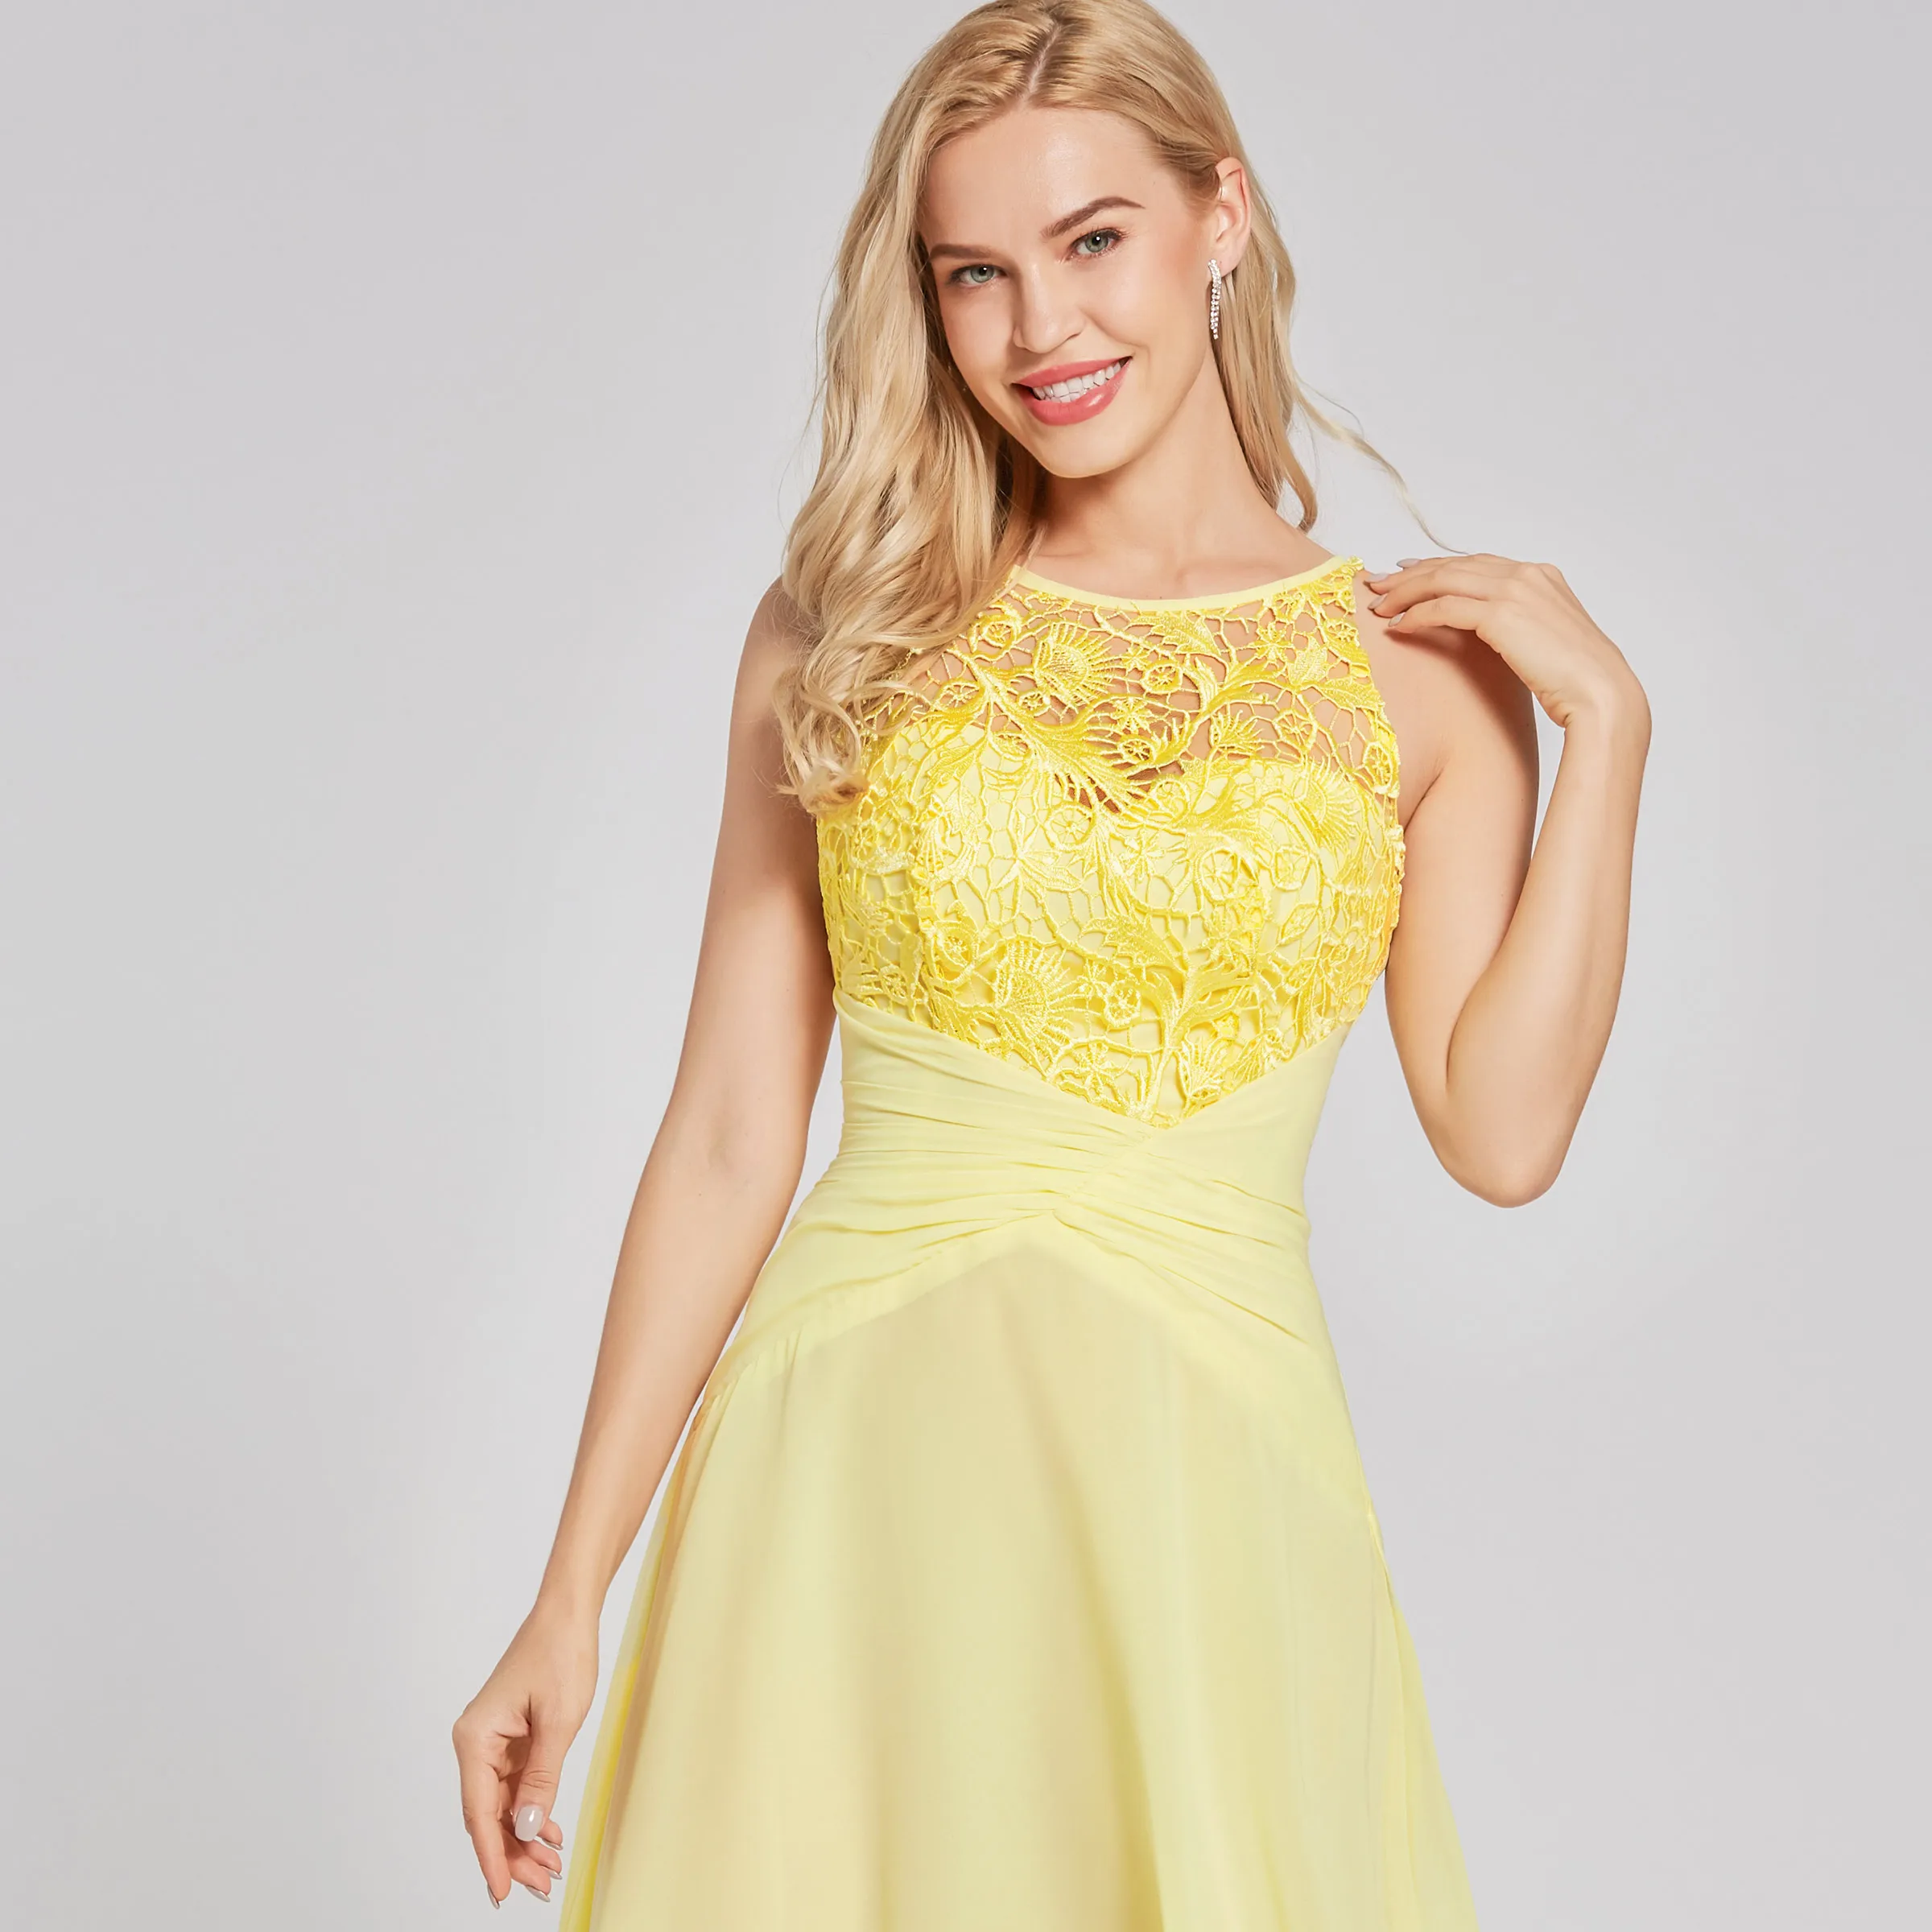 Dressv daffodil длинное вечернее платье, недорогое ТРАПЕЦИЕВИДНОЕ платье без рукавов с глубоким вырезом, свадебное вечернее платье, кружевное вечернее платье es